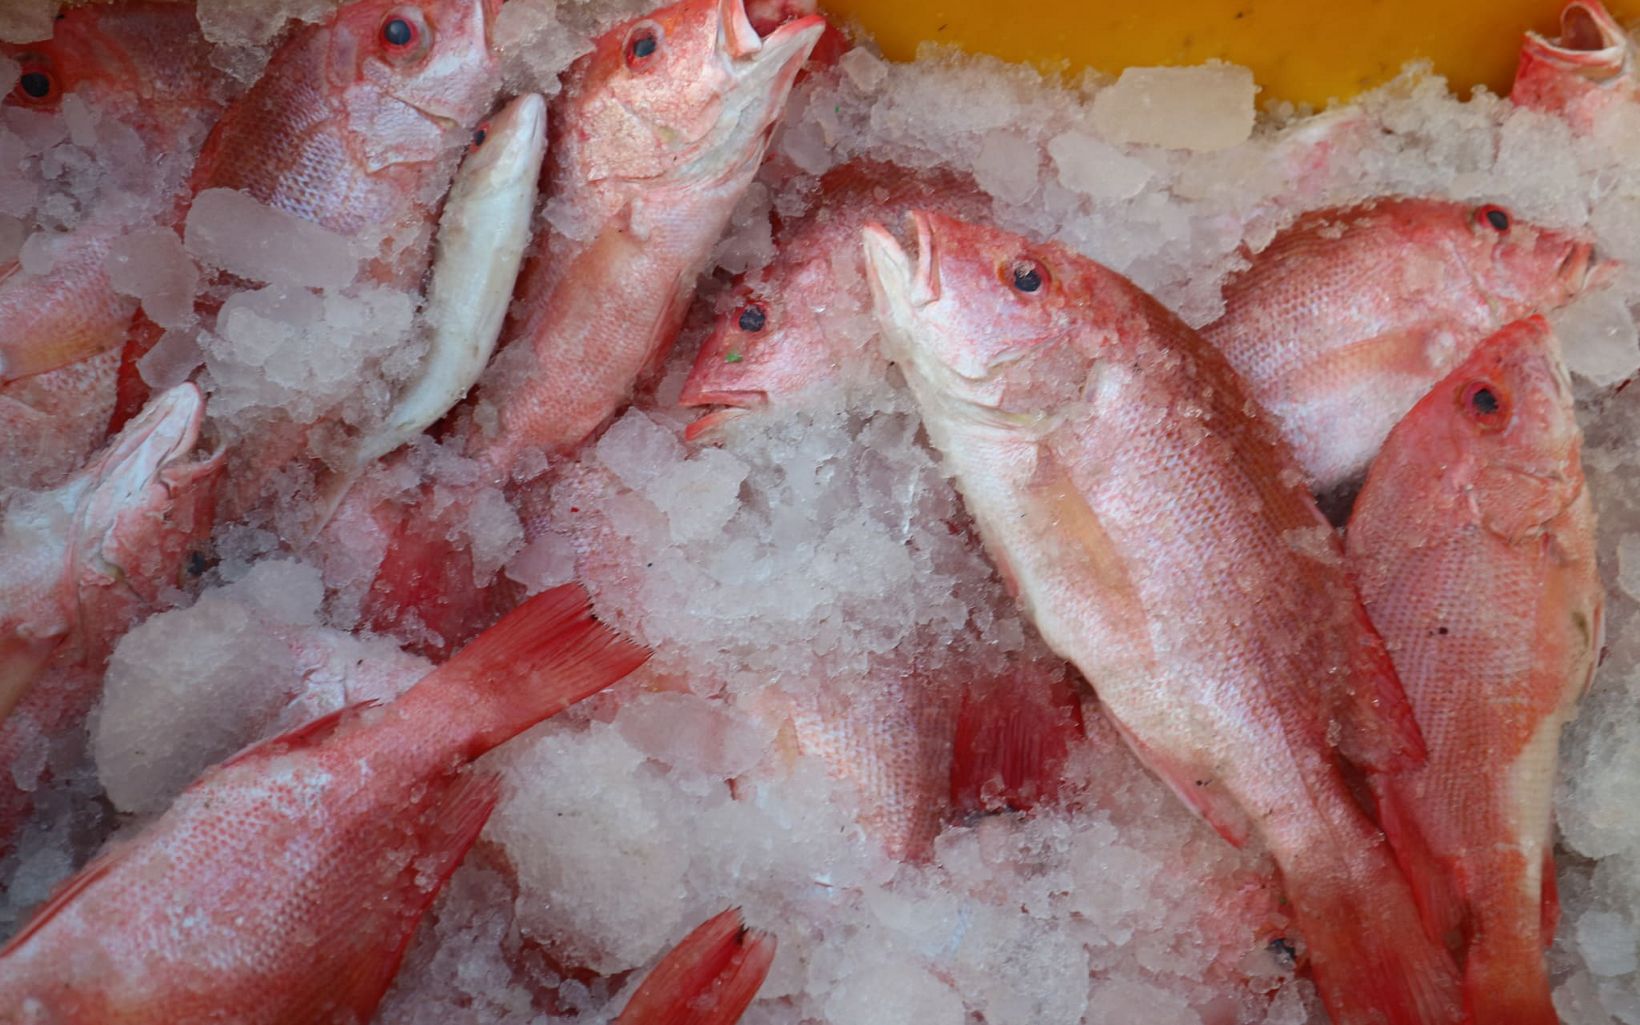 Proses pembusukan ikan setelah ikan mati sangatlah cepat. Untuk itu, es baru dimasukan ke dalam tumpukan ikan hasil tangkapan untuk menjaga kesegarannya